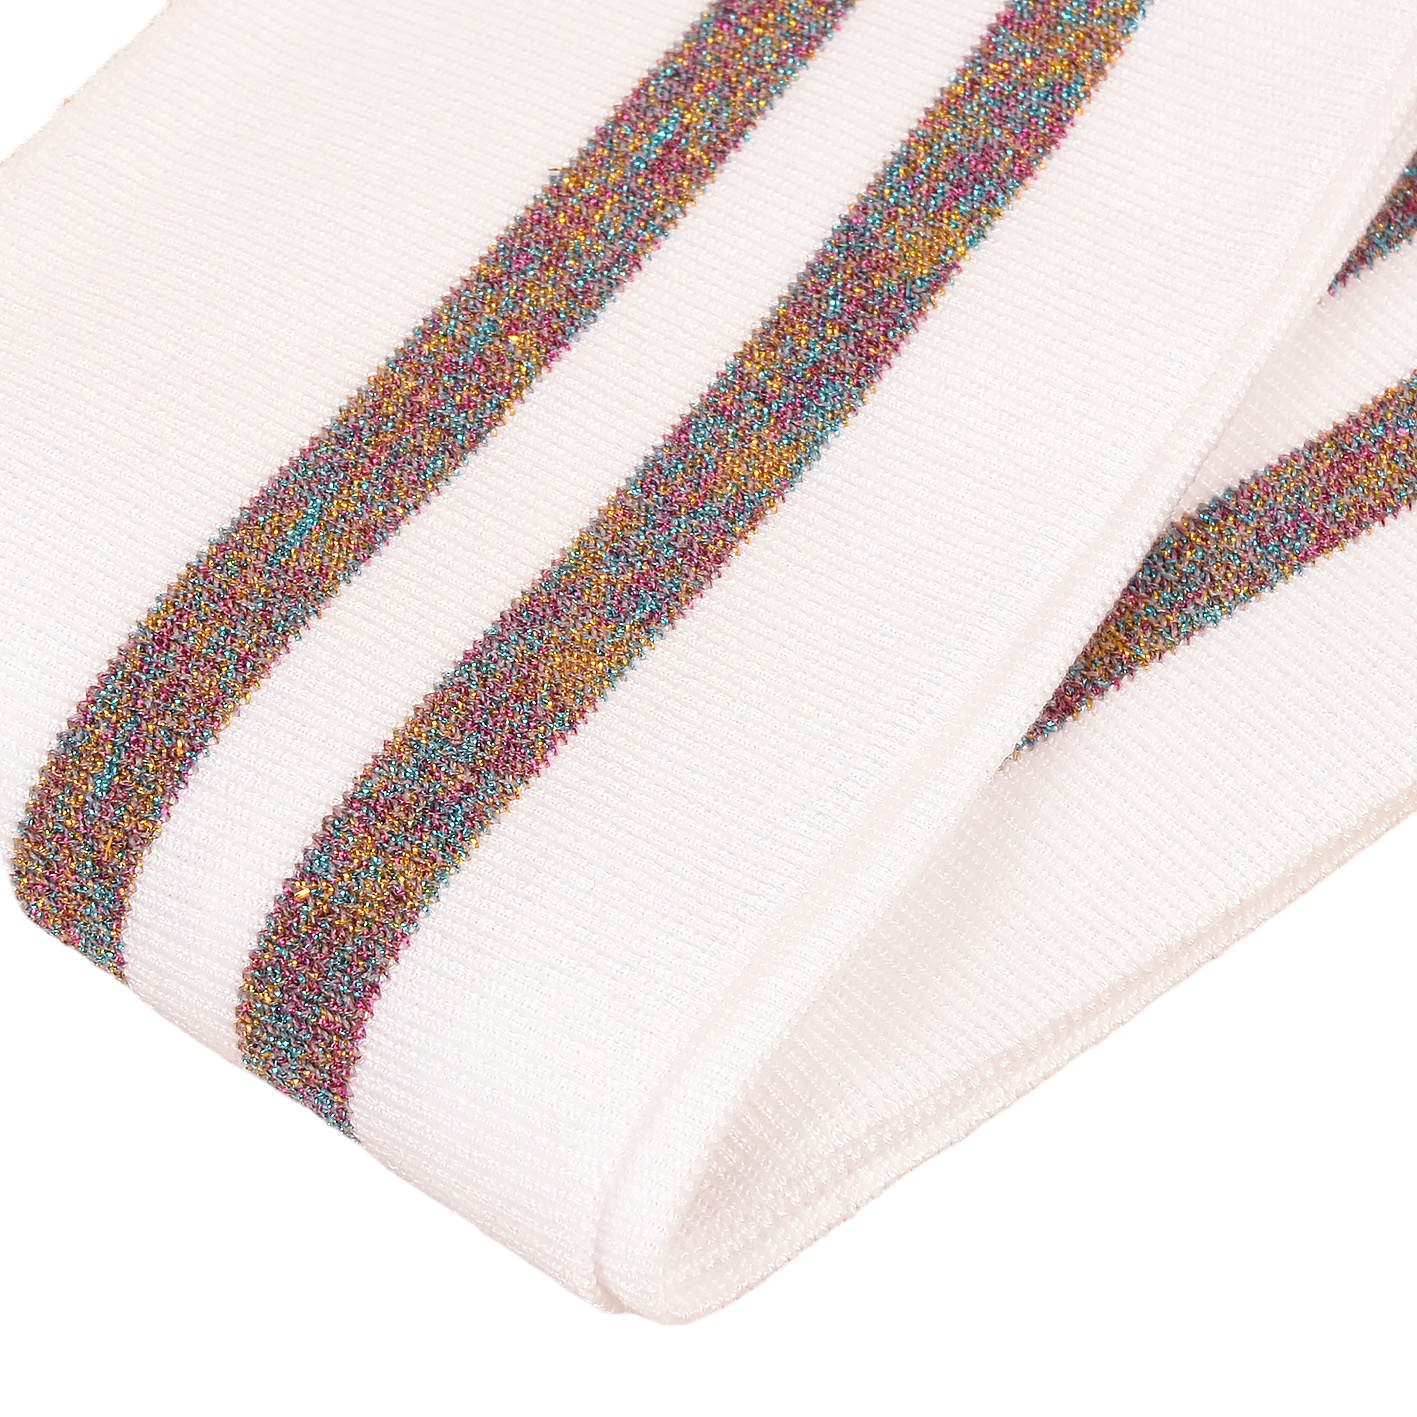 Bande de bord côte 1.2mx85mm blanc multicolore lurex